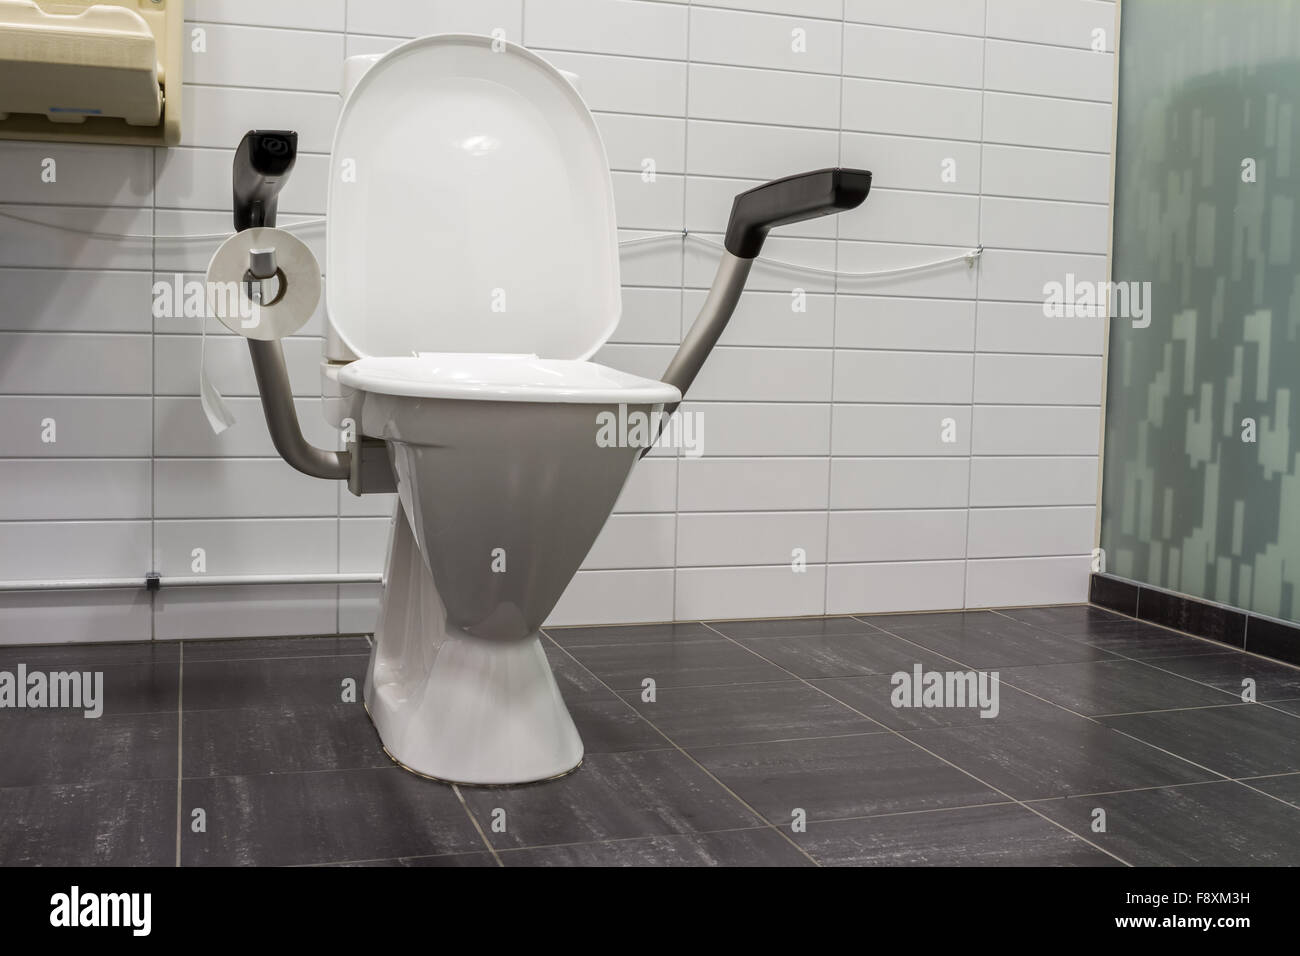 All'aeroporto vi è un ente pubblico di un WC per disabili Foto Stock